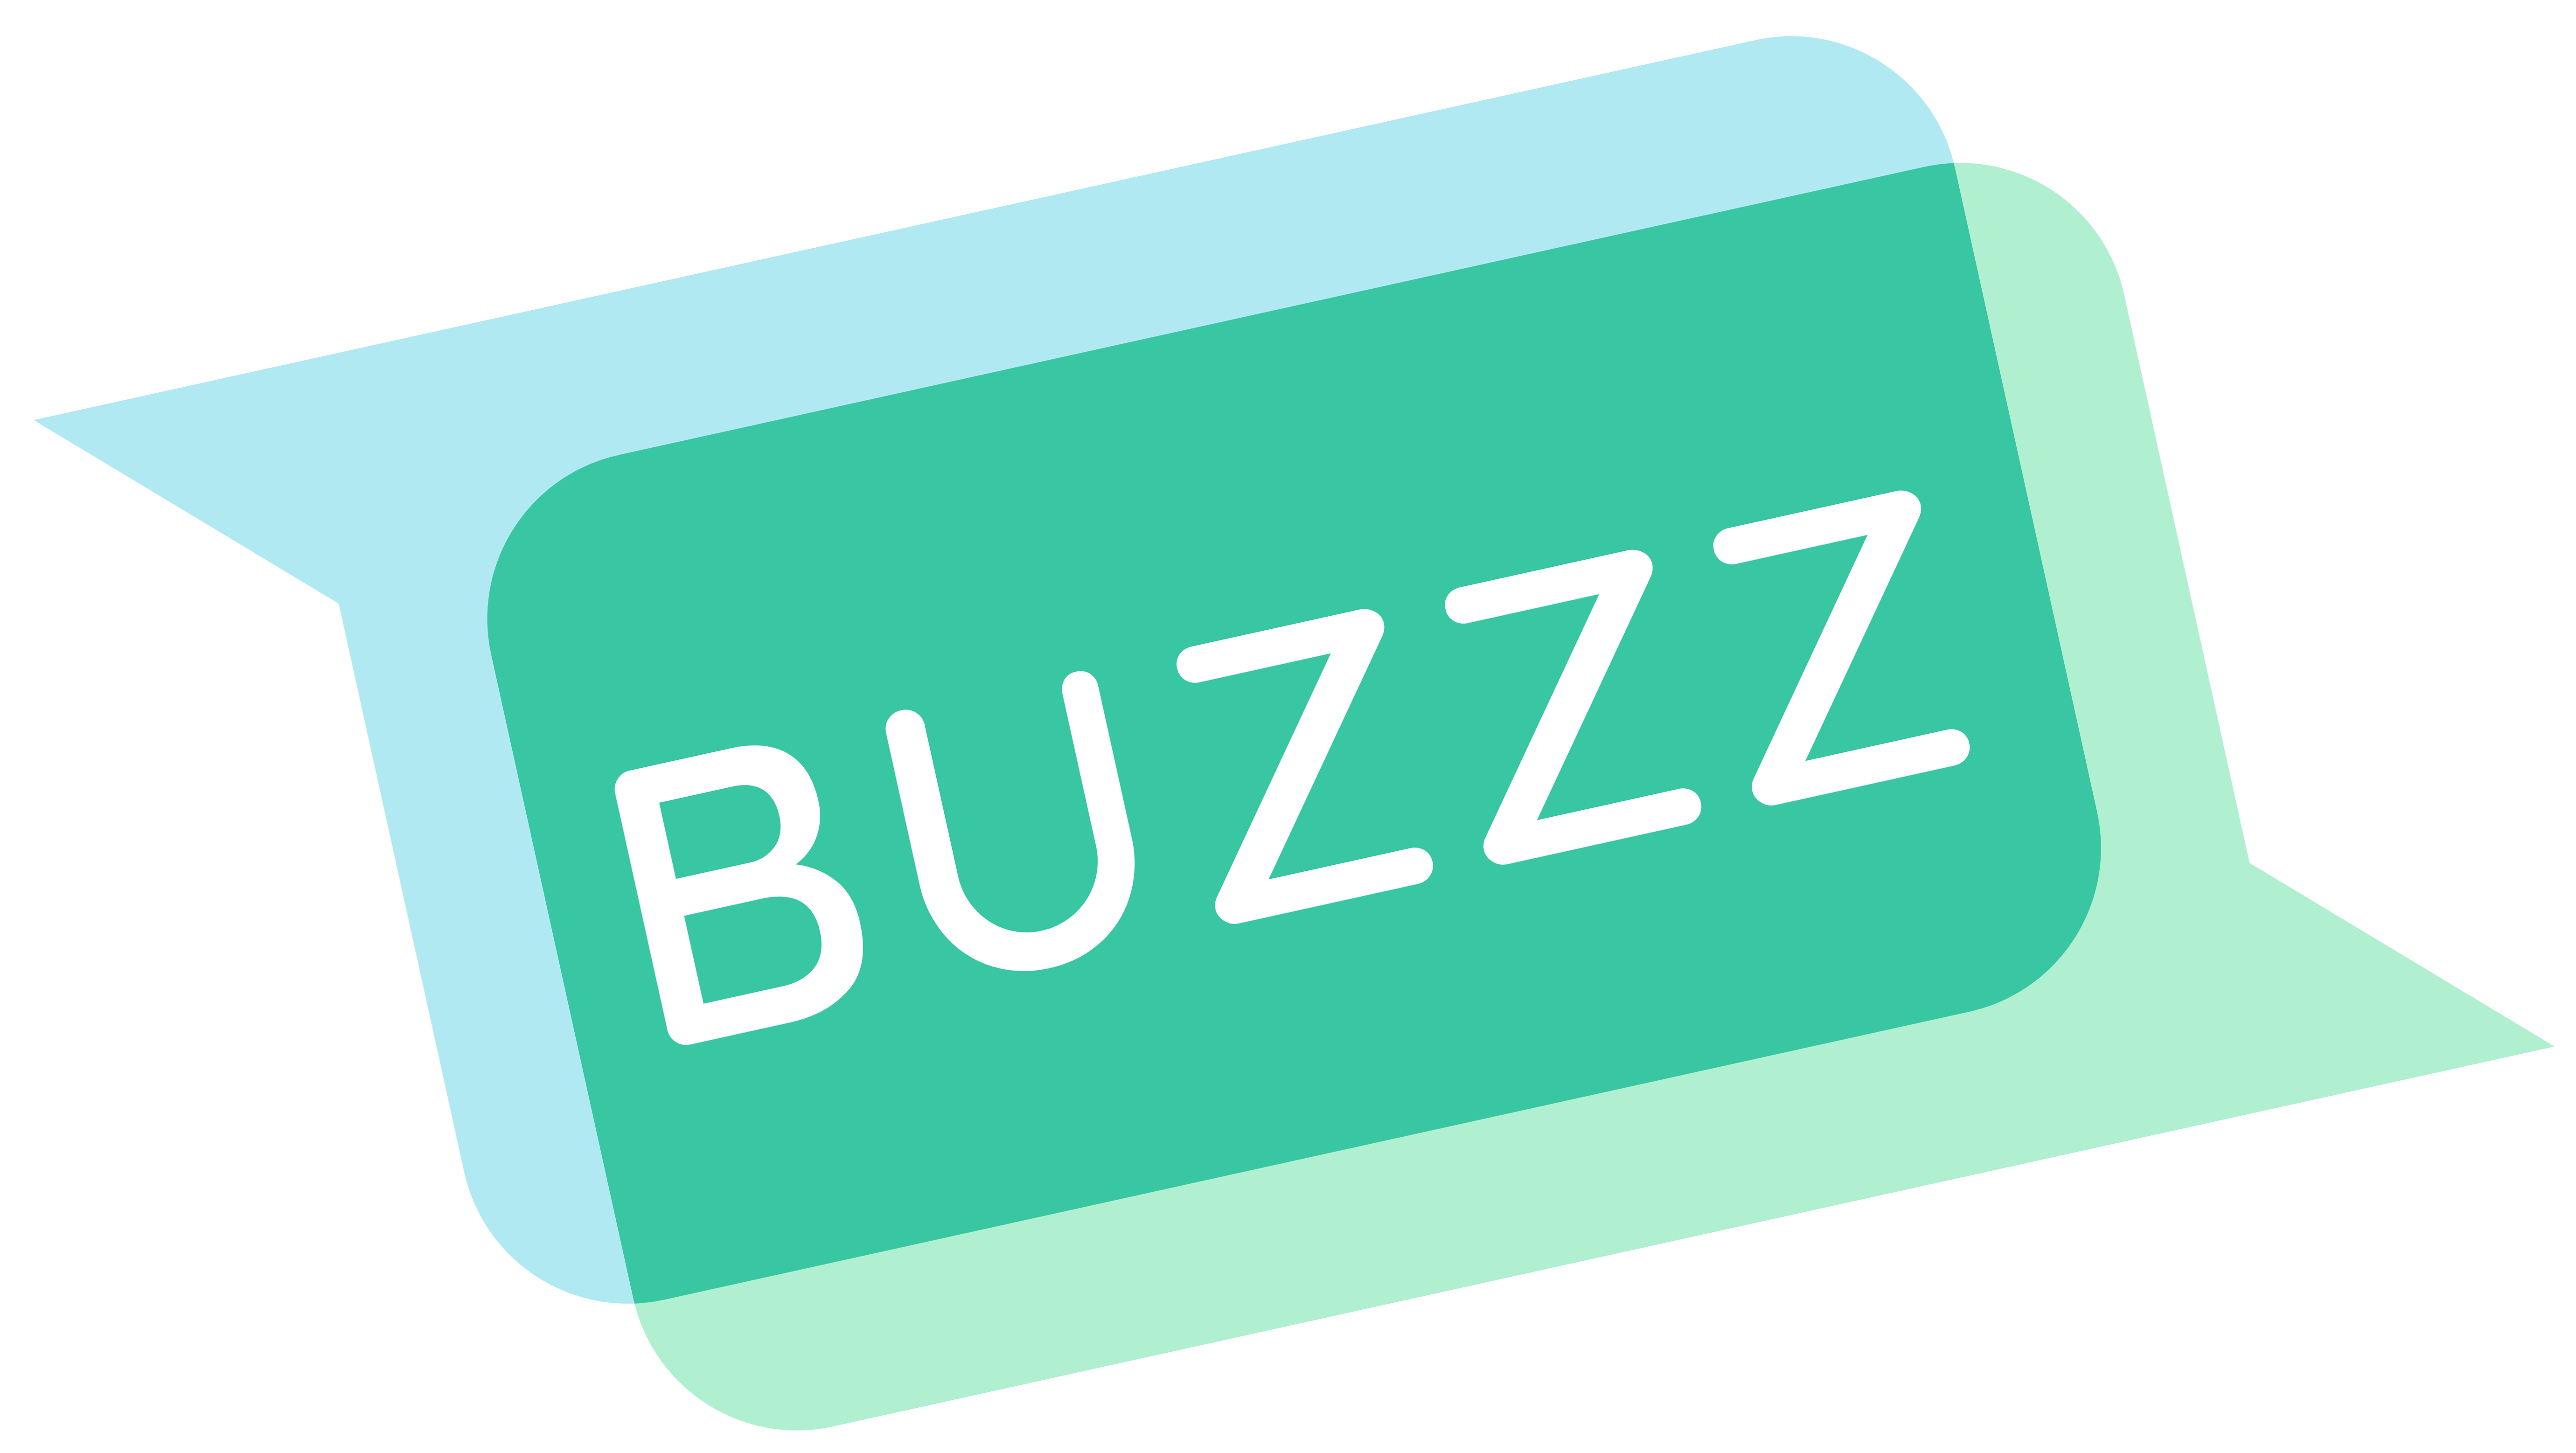 Logo der neuen s2G.at Kommunikationssoftware "Buzzz".